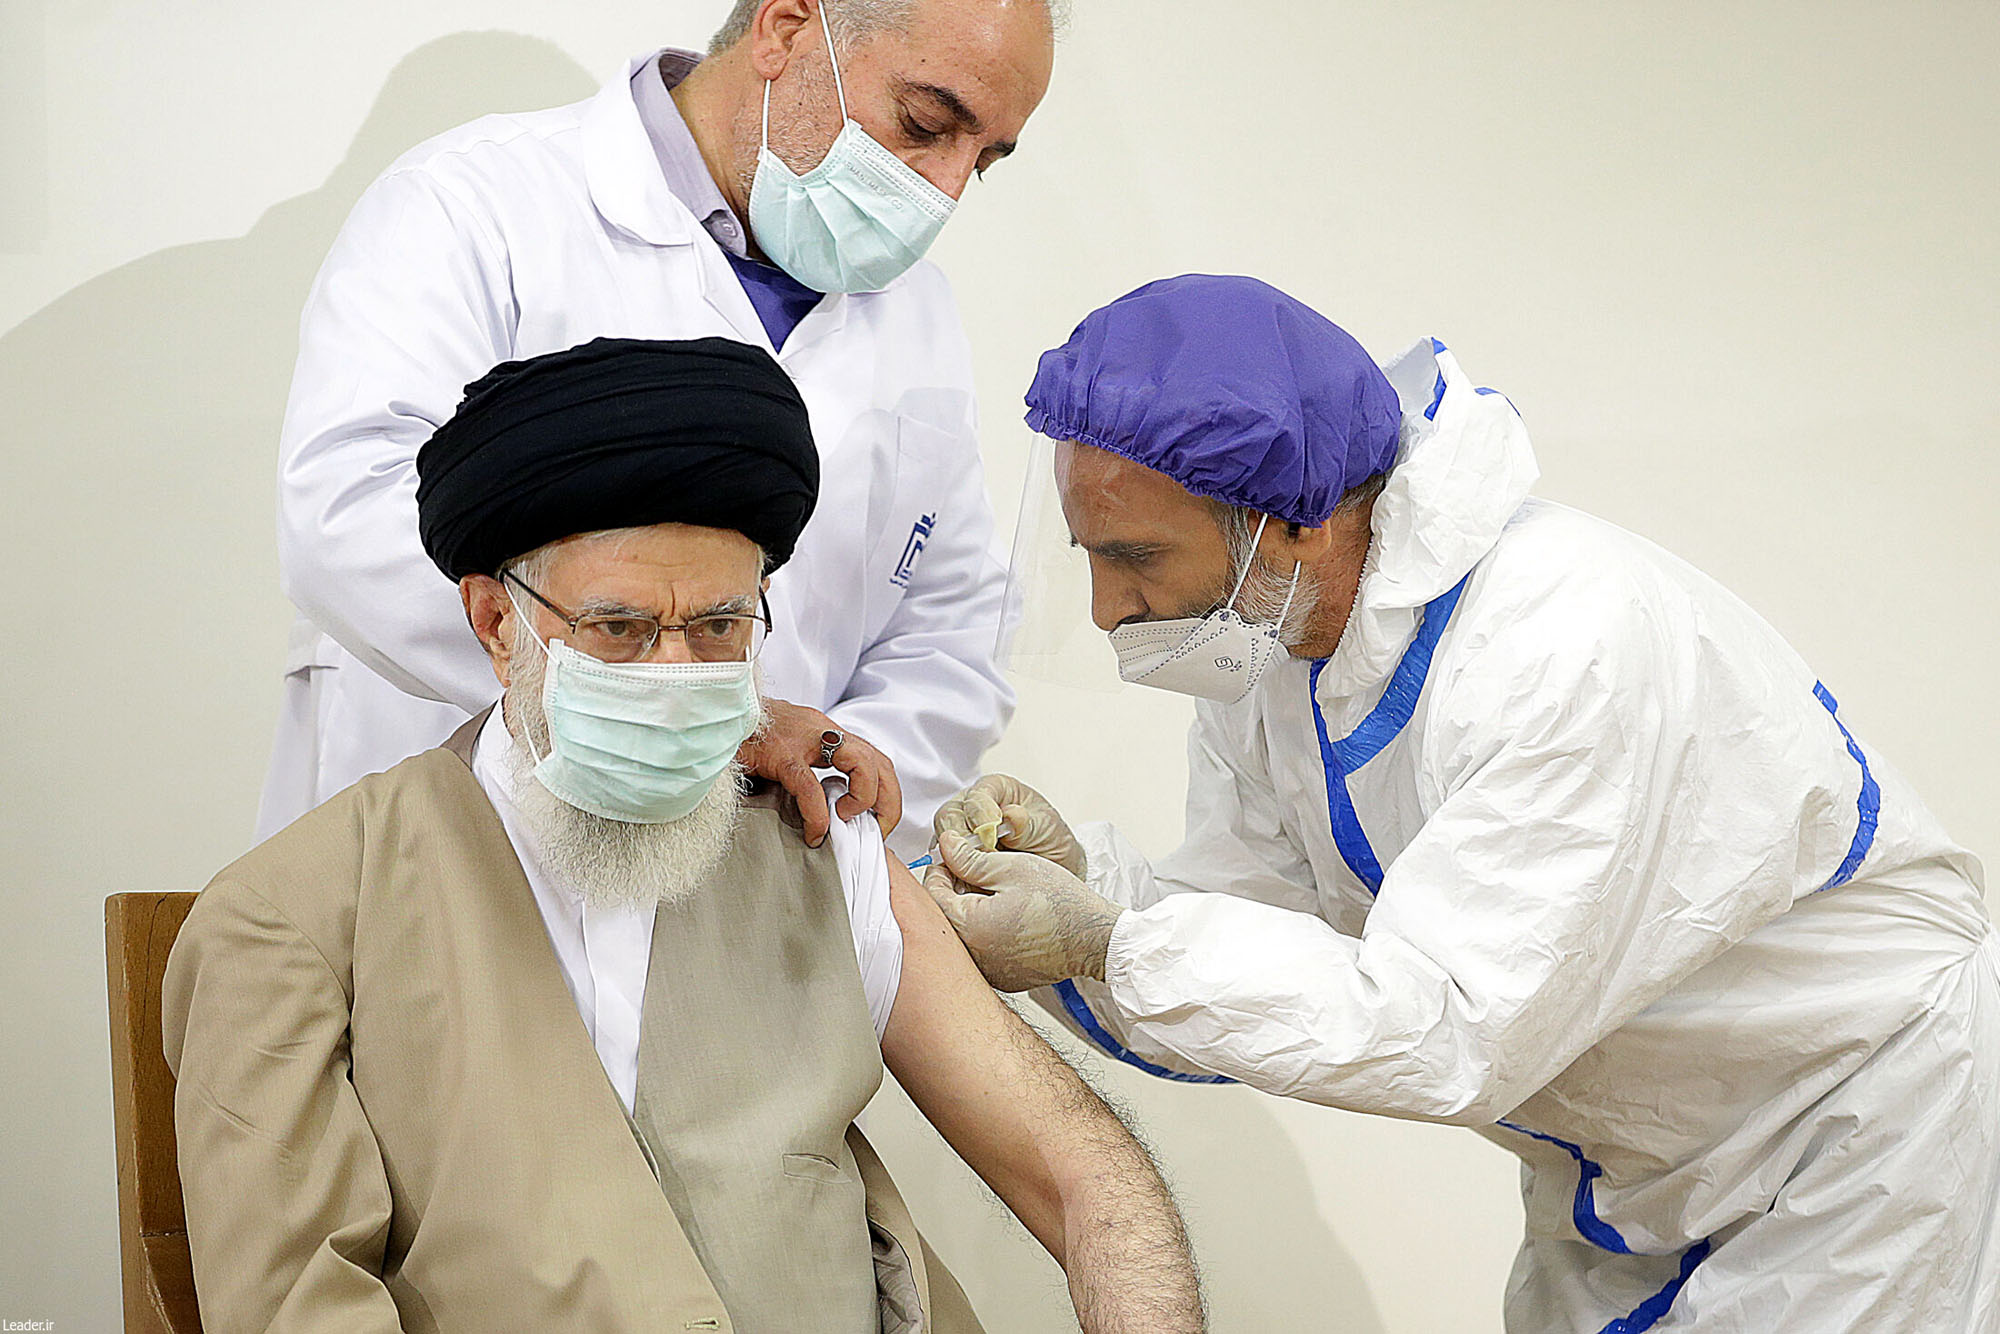 دریافت نوبت اول واکسن ایرانی کرونا توسط رهبر انقلاب